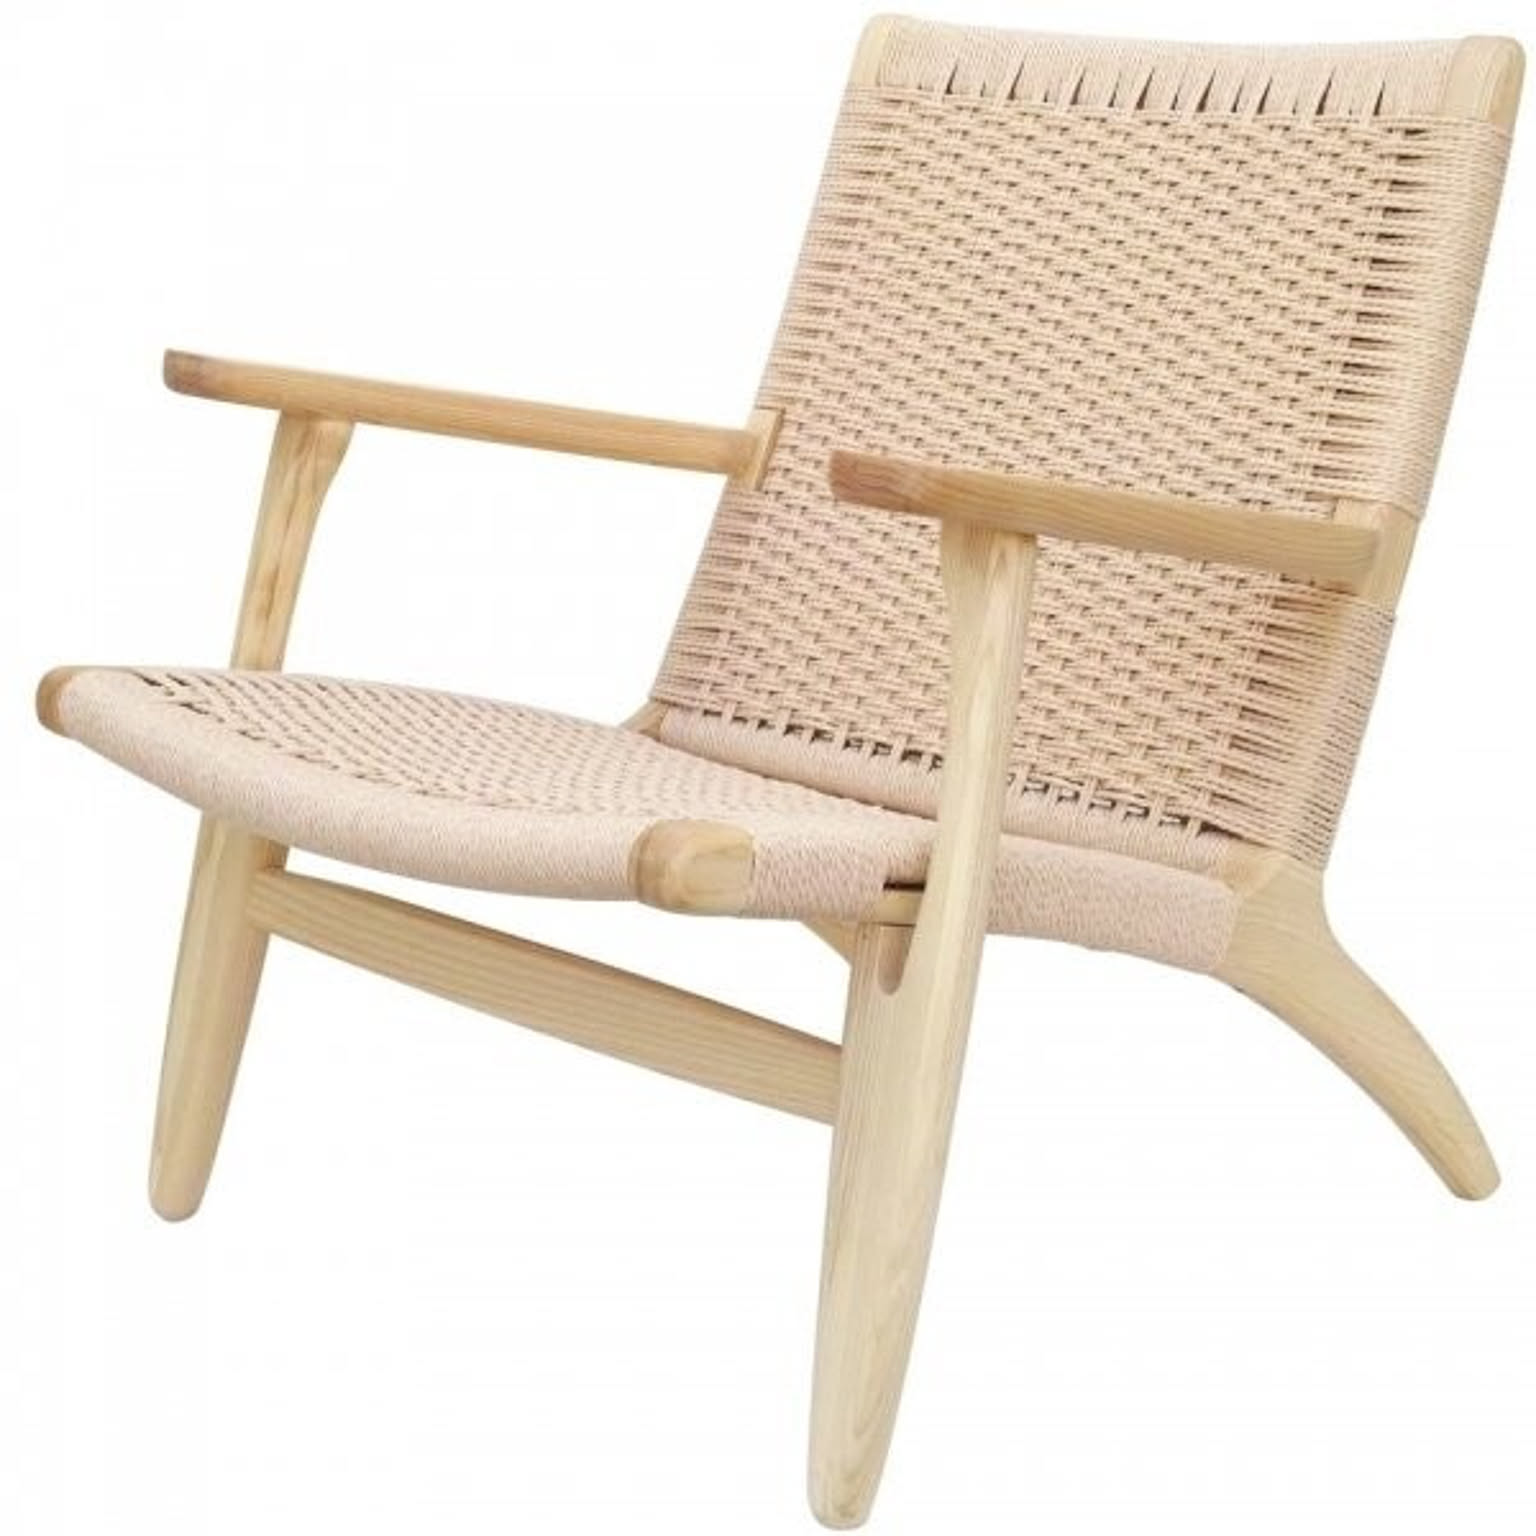 チェア 椅子 おしゃれ 北欧 デザイナーズ 家具 ミッドセンチュリー デザイン ラウンジチェア 【CH-25】